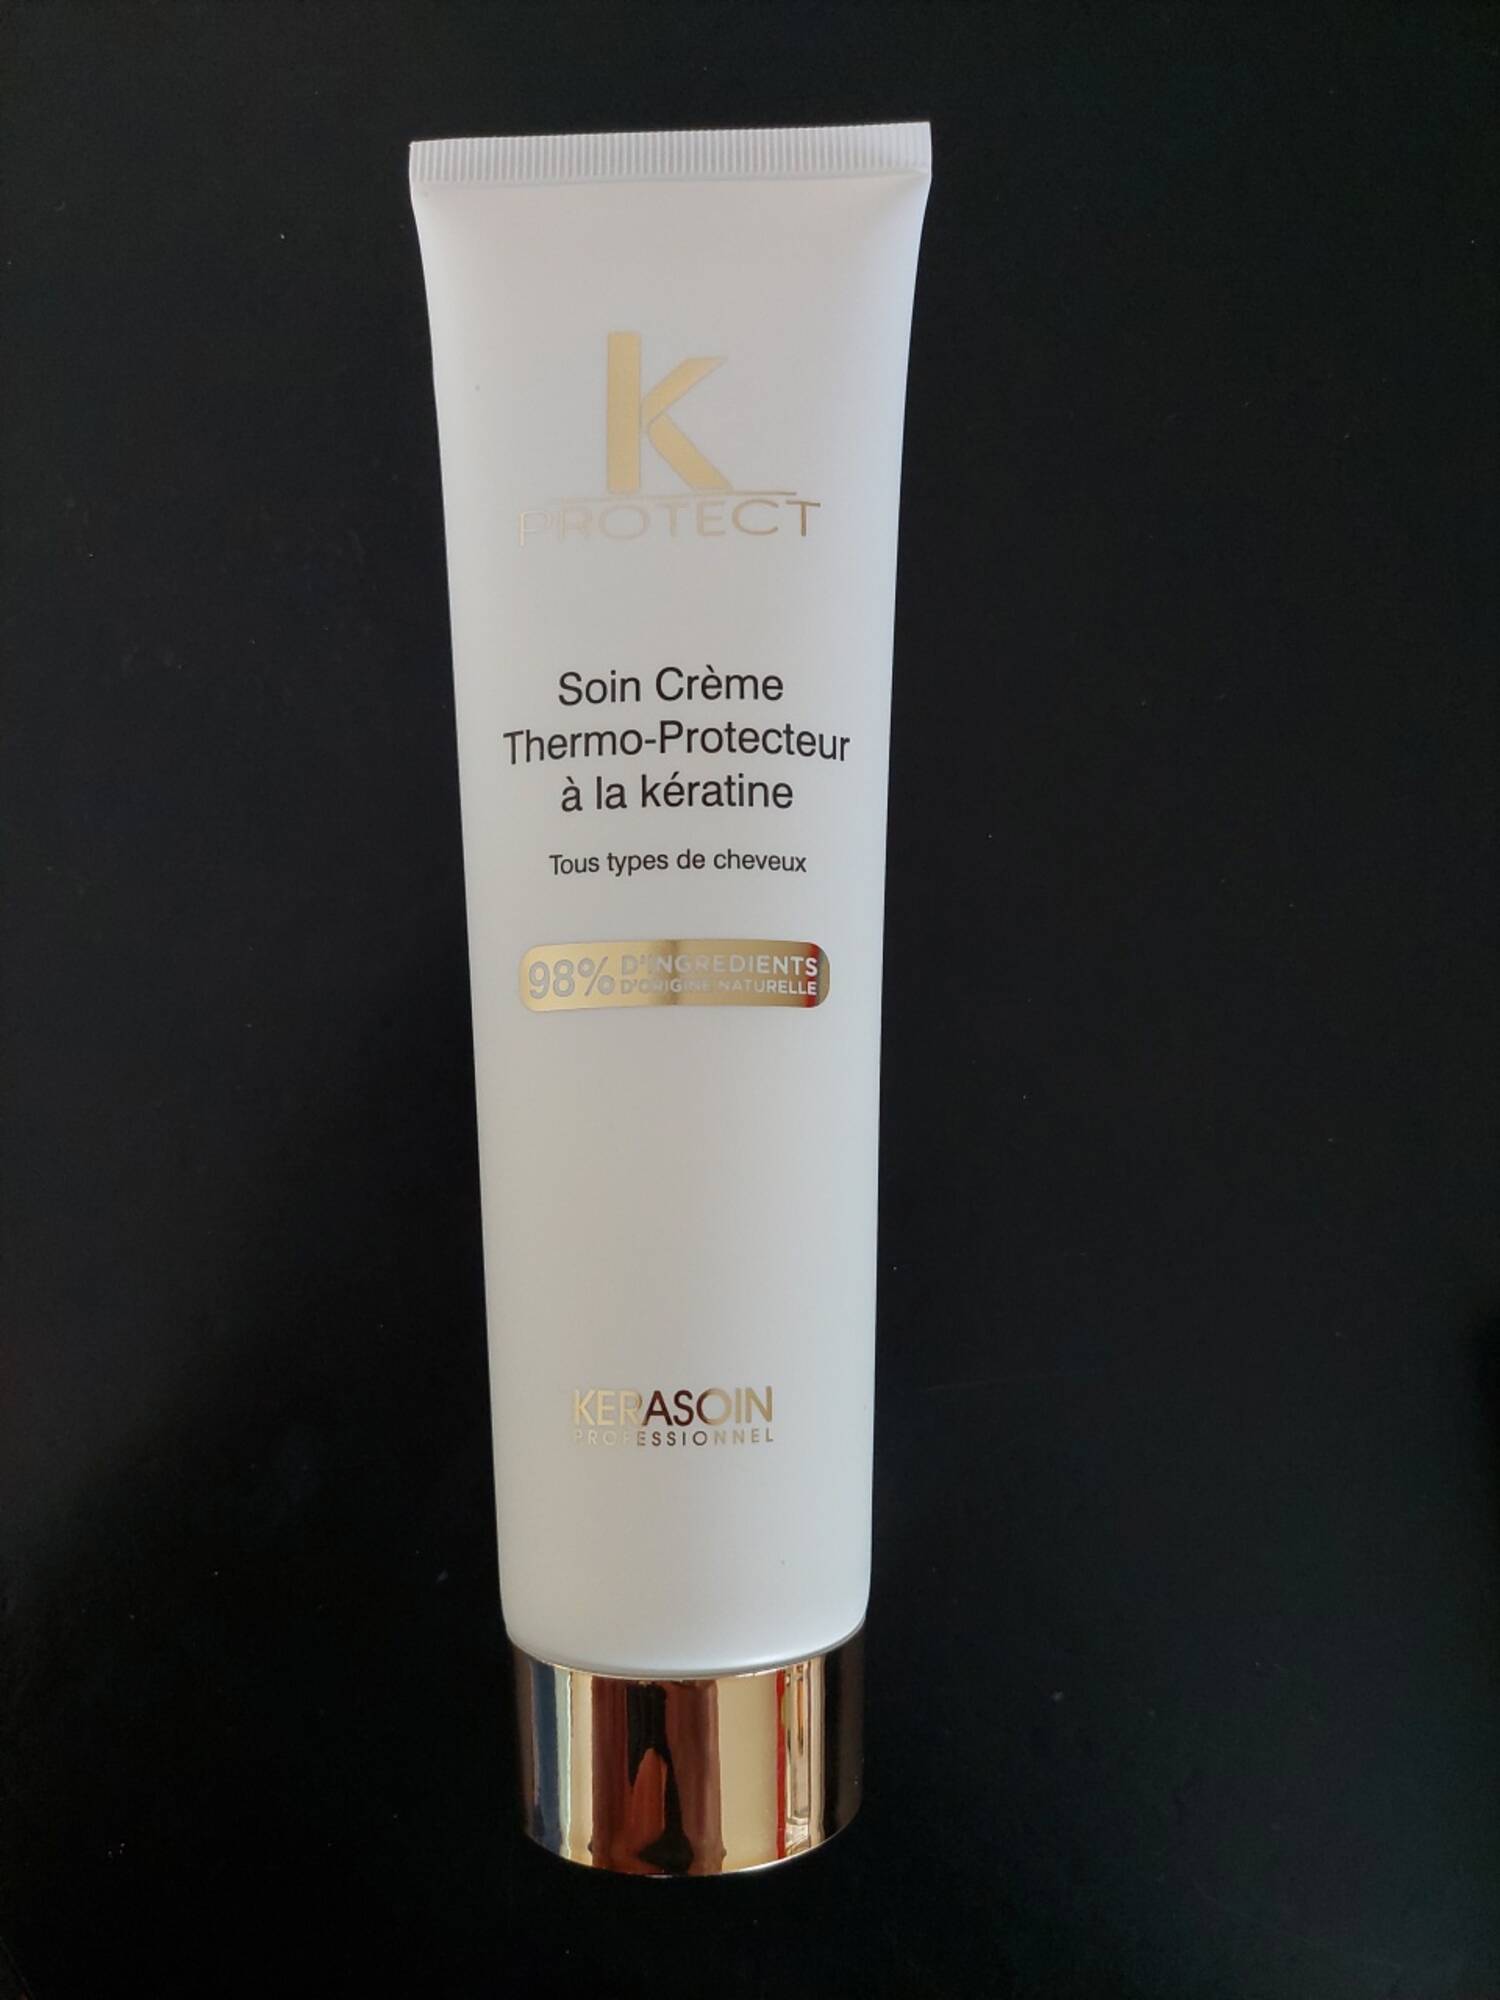 KERASOIN PROFESSIONNEL - K protect - Soin crème thermo-protecteur à la kératine 